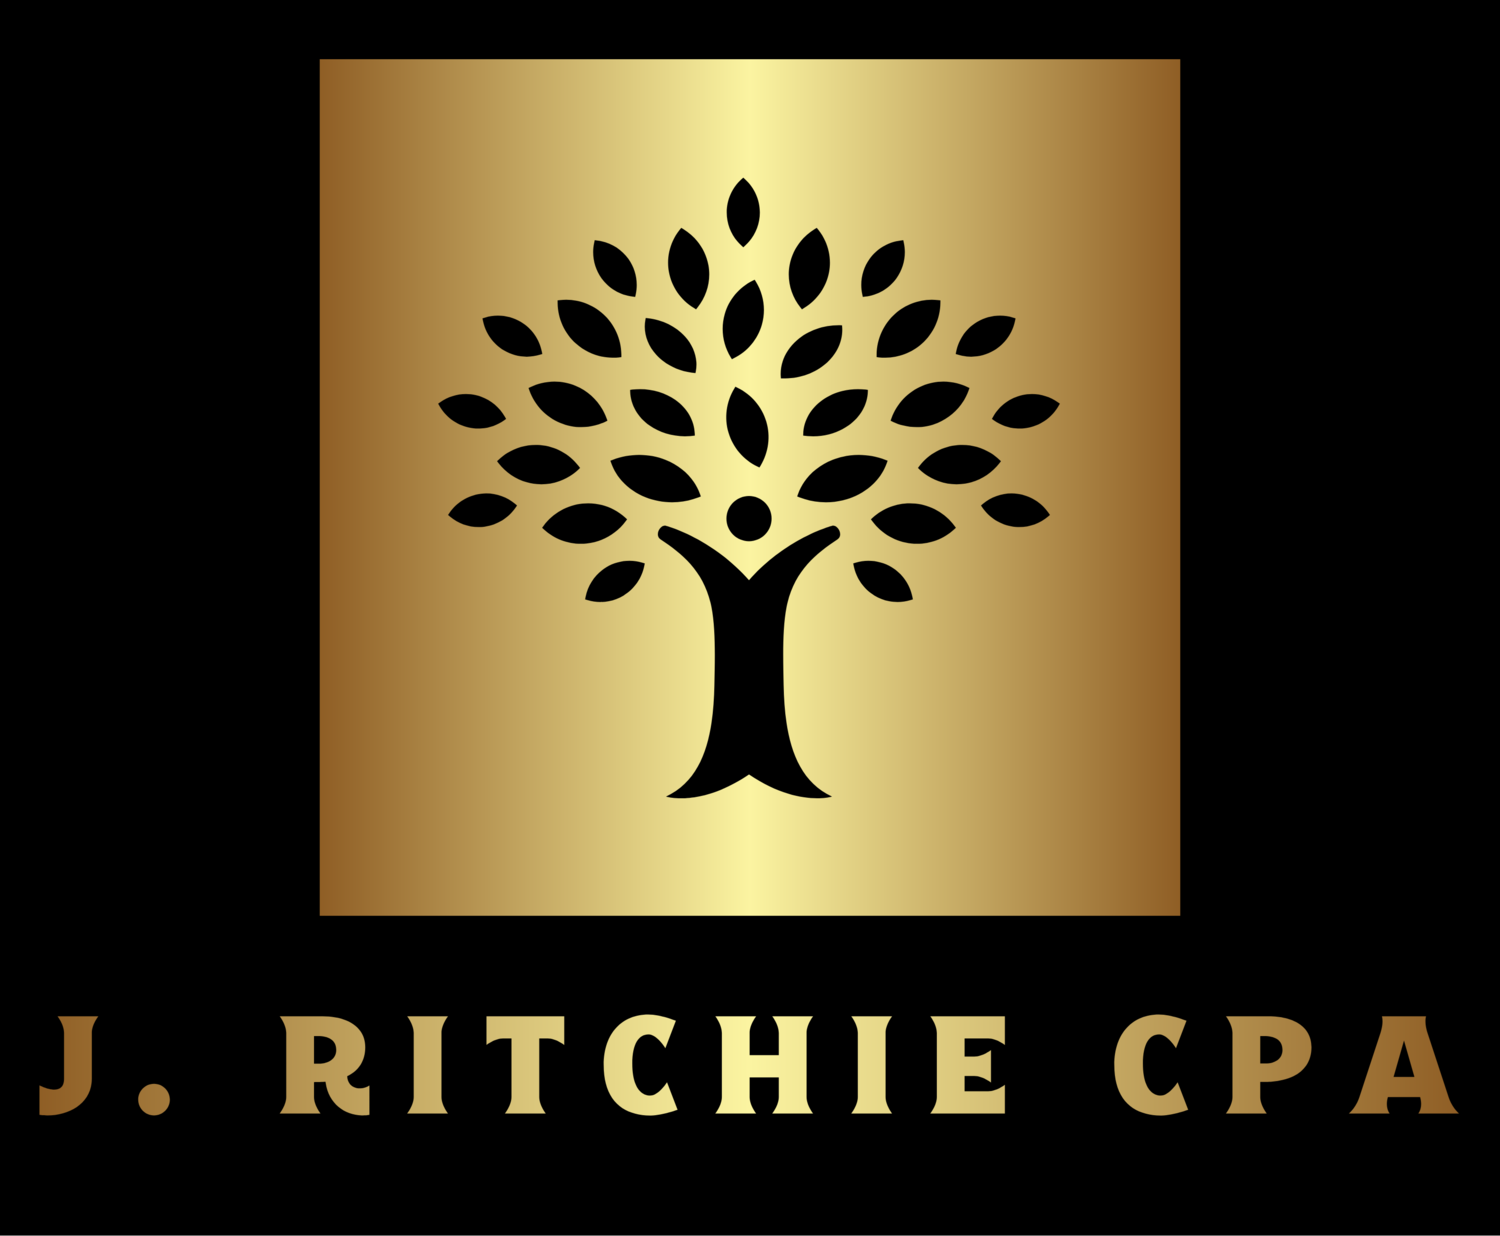 J. Ritchie CPA